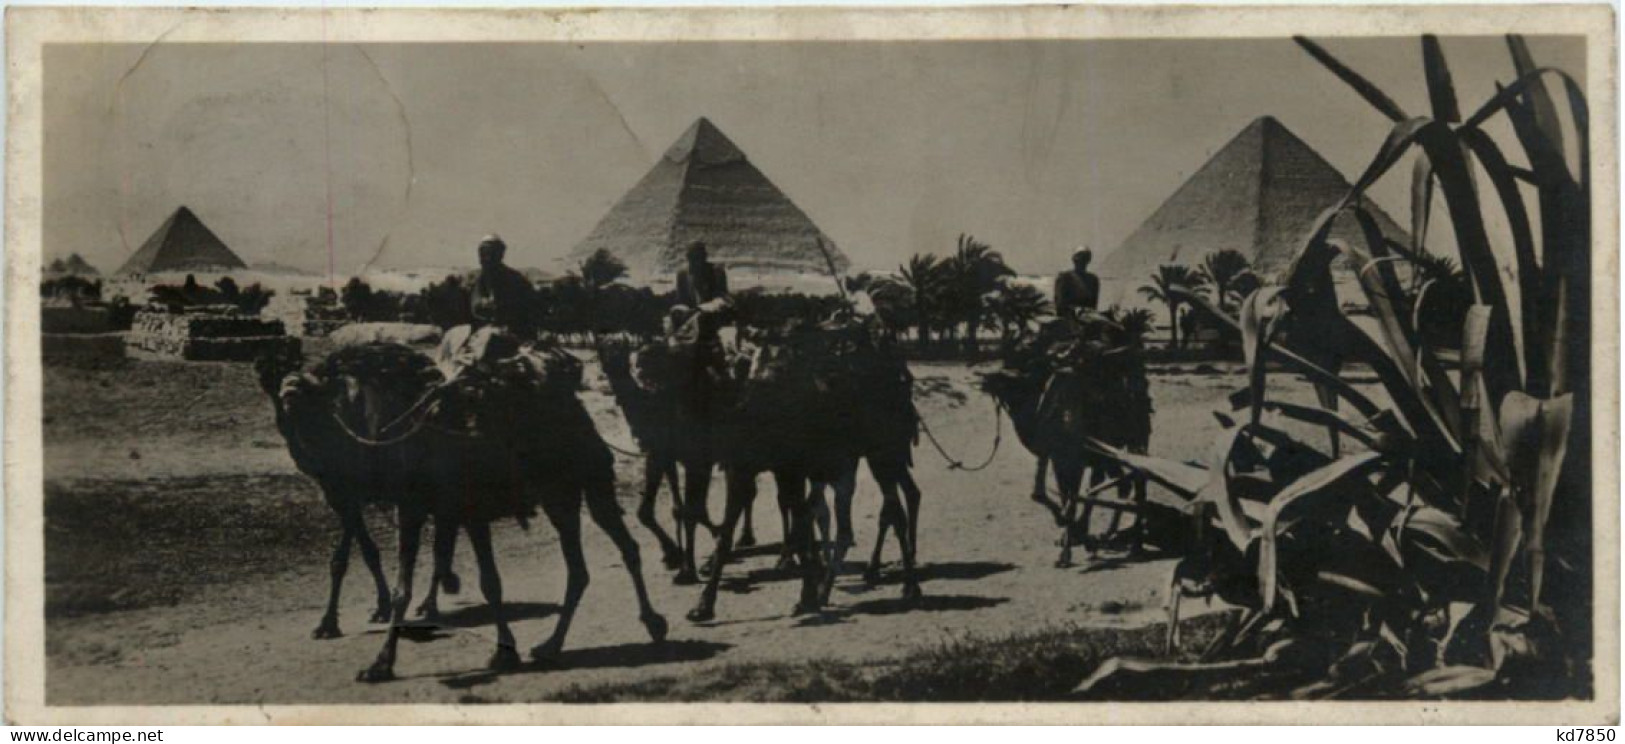 Ägypten - Pyramiden - Pyramids